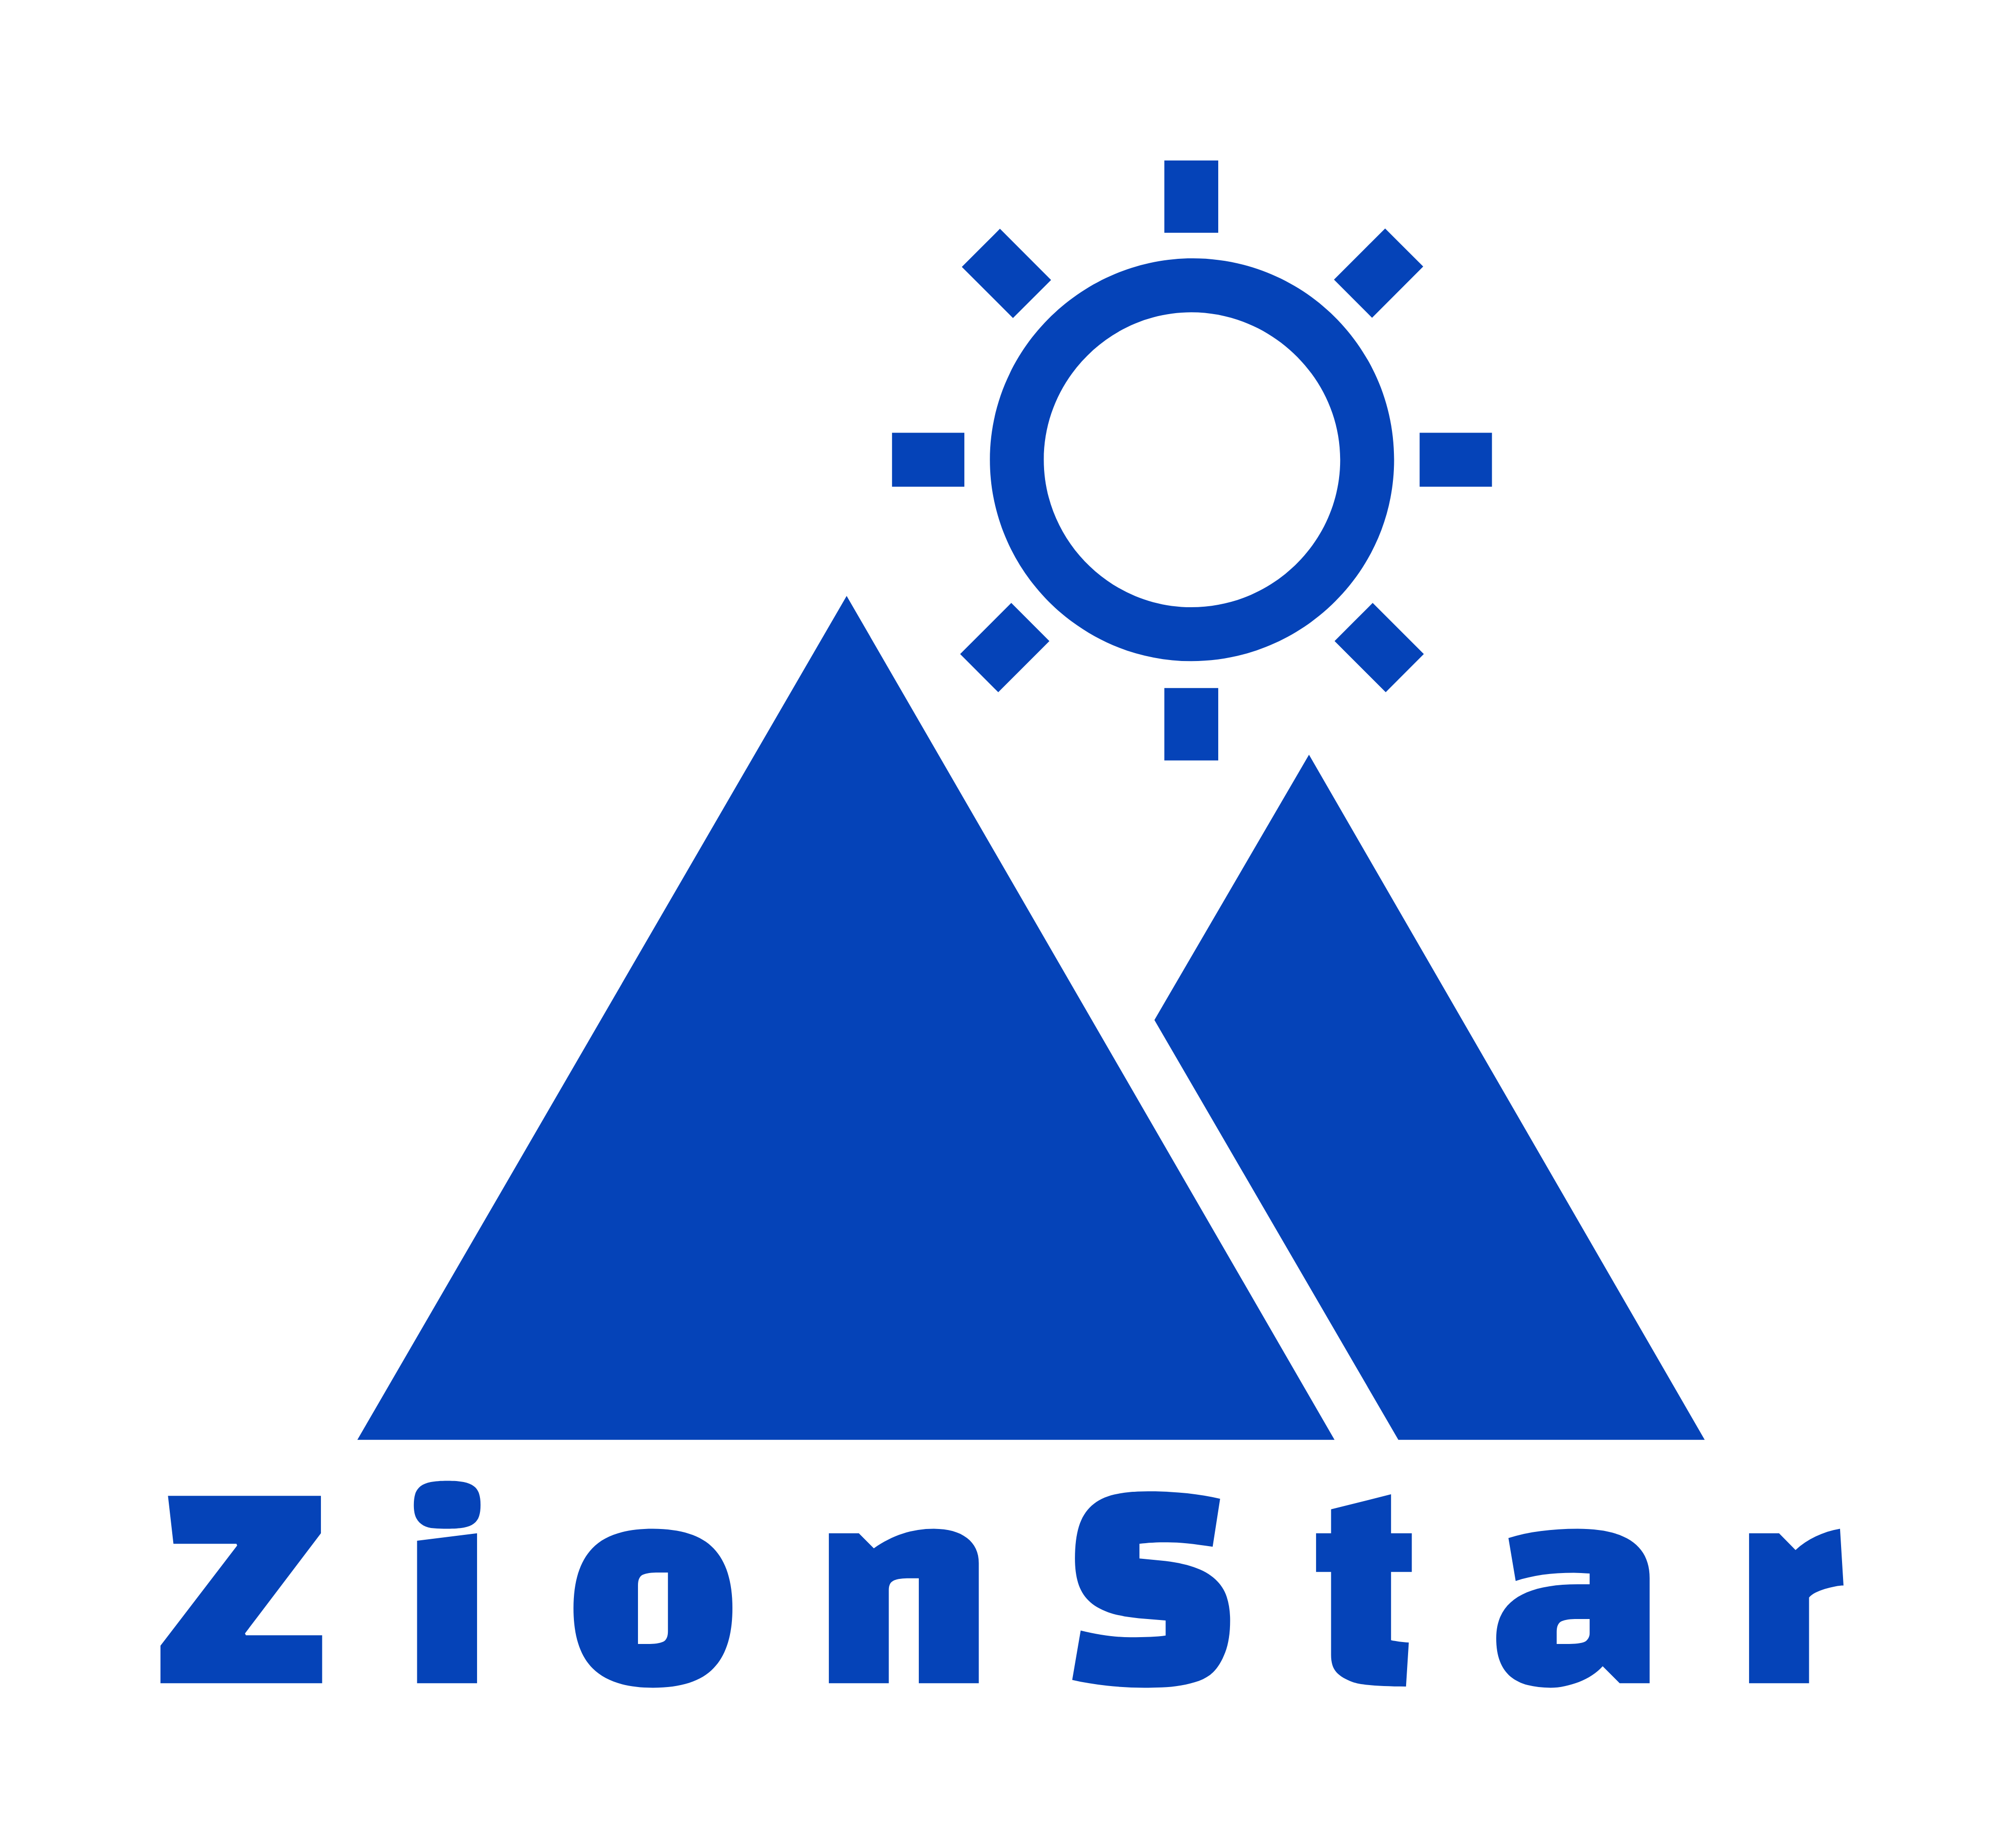 ZionStar Private limited